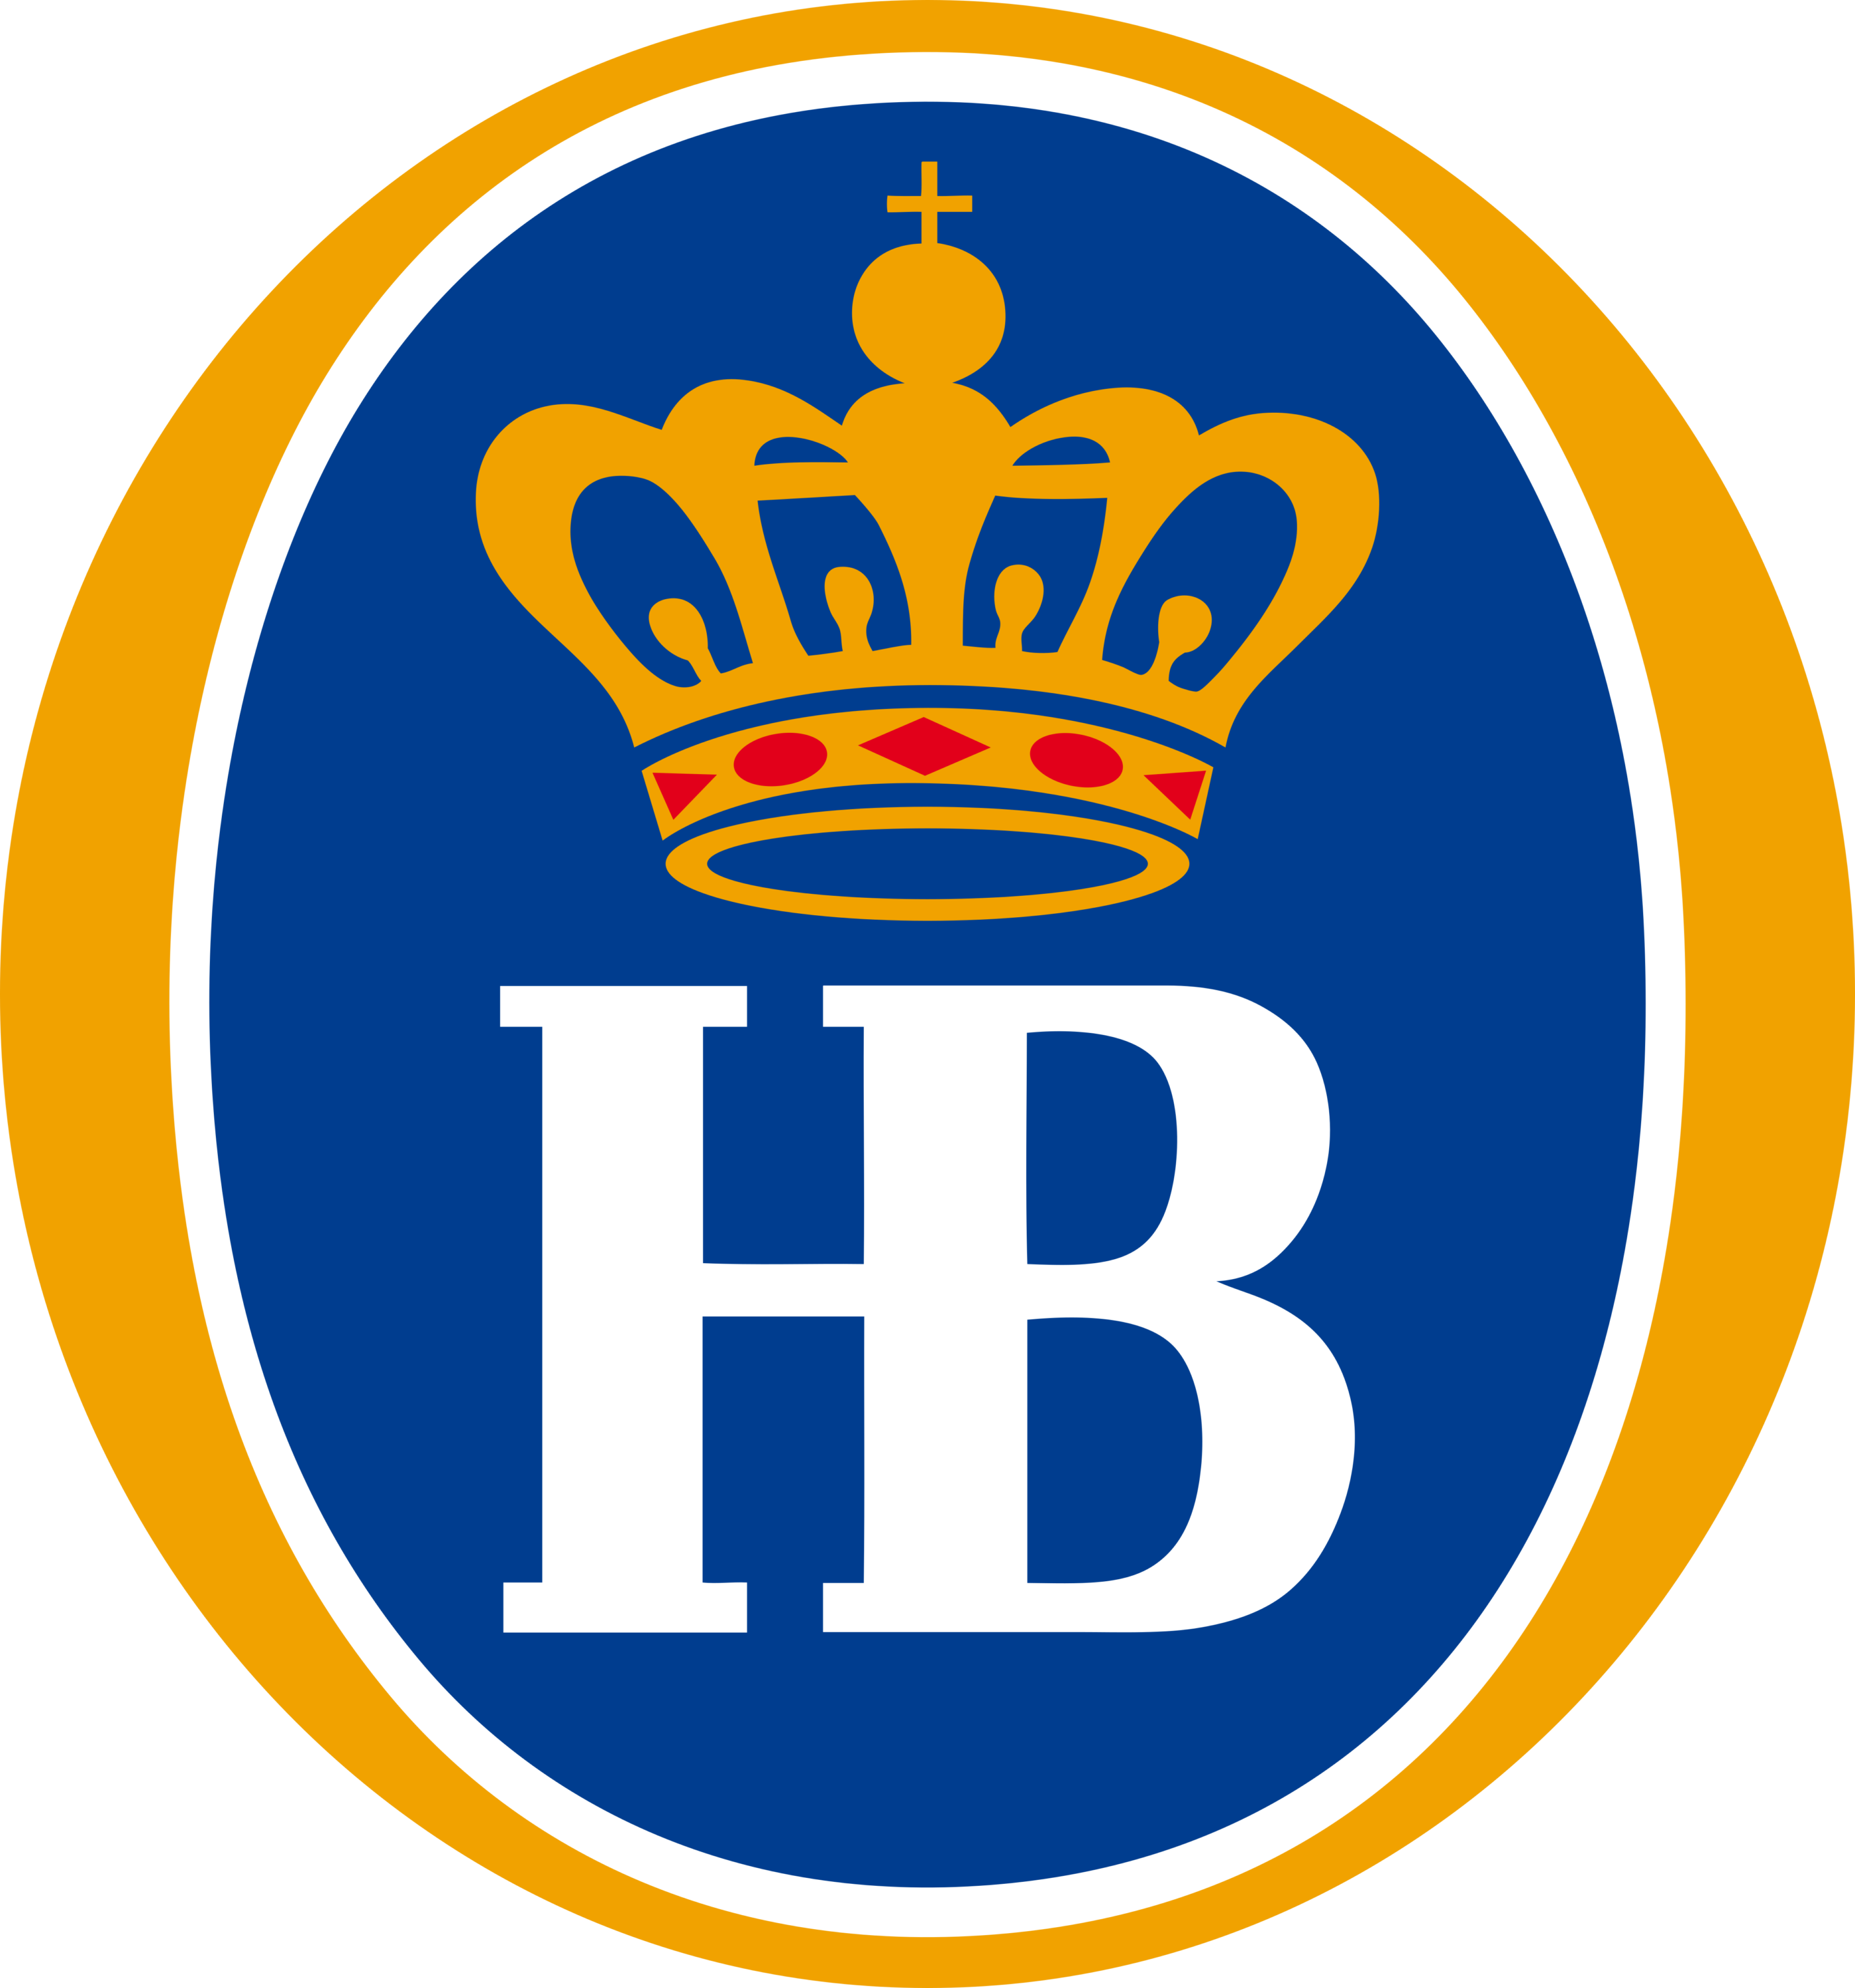 HB Beer Munchen Logo